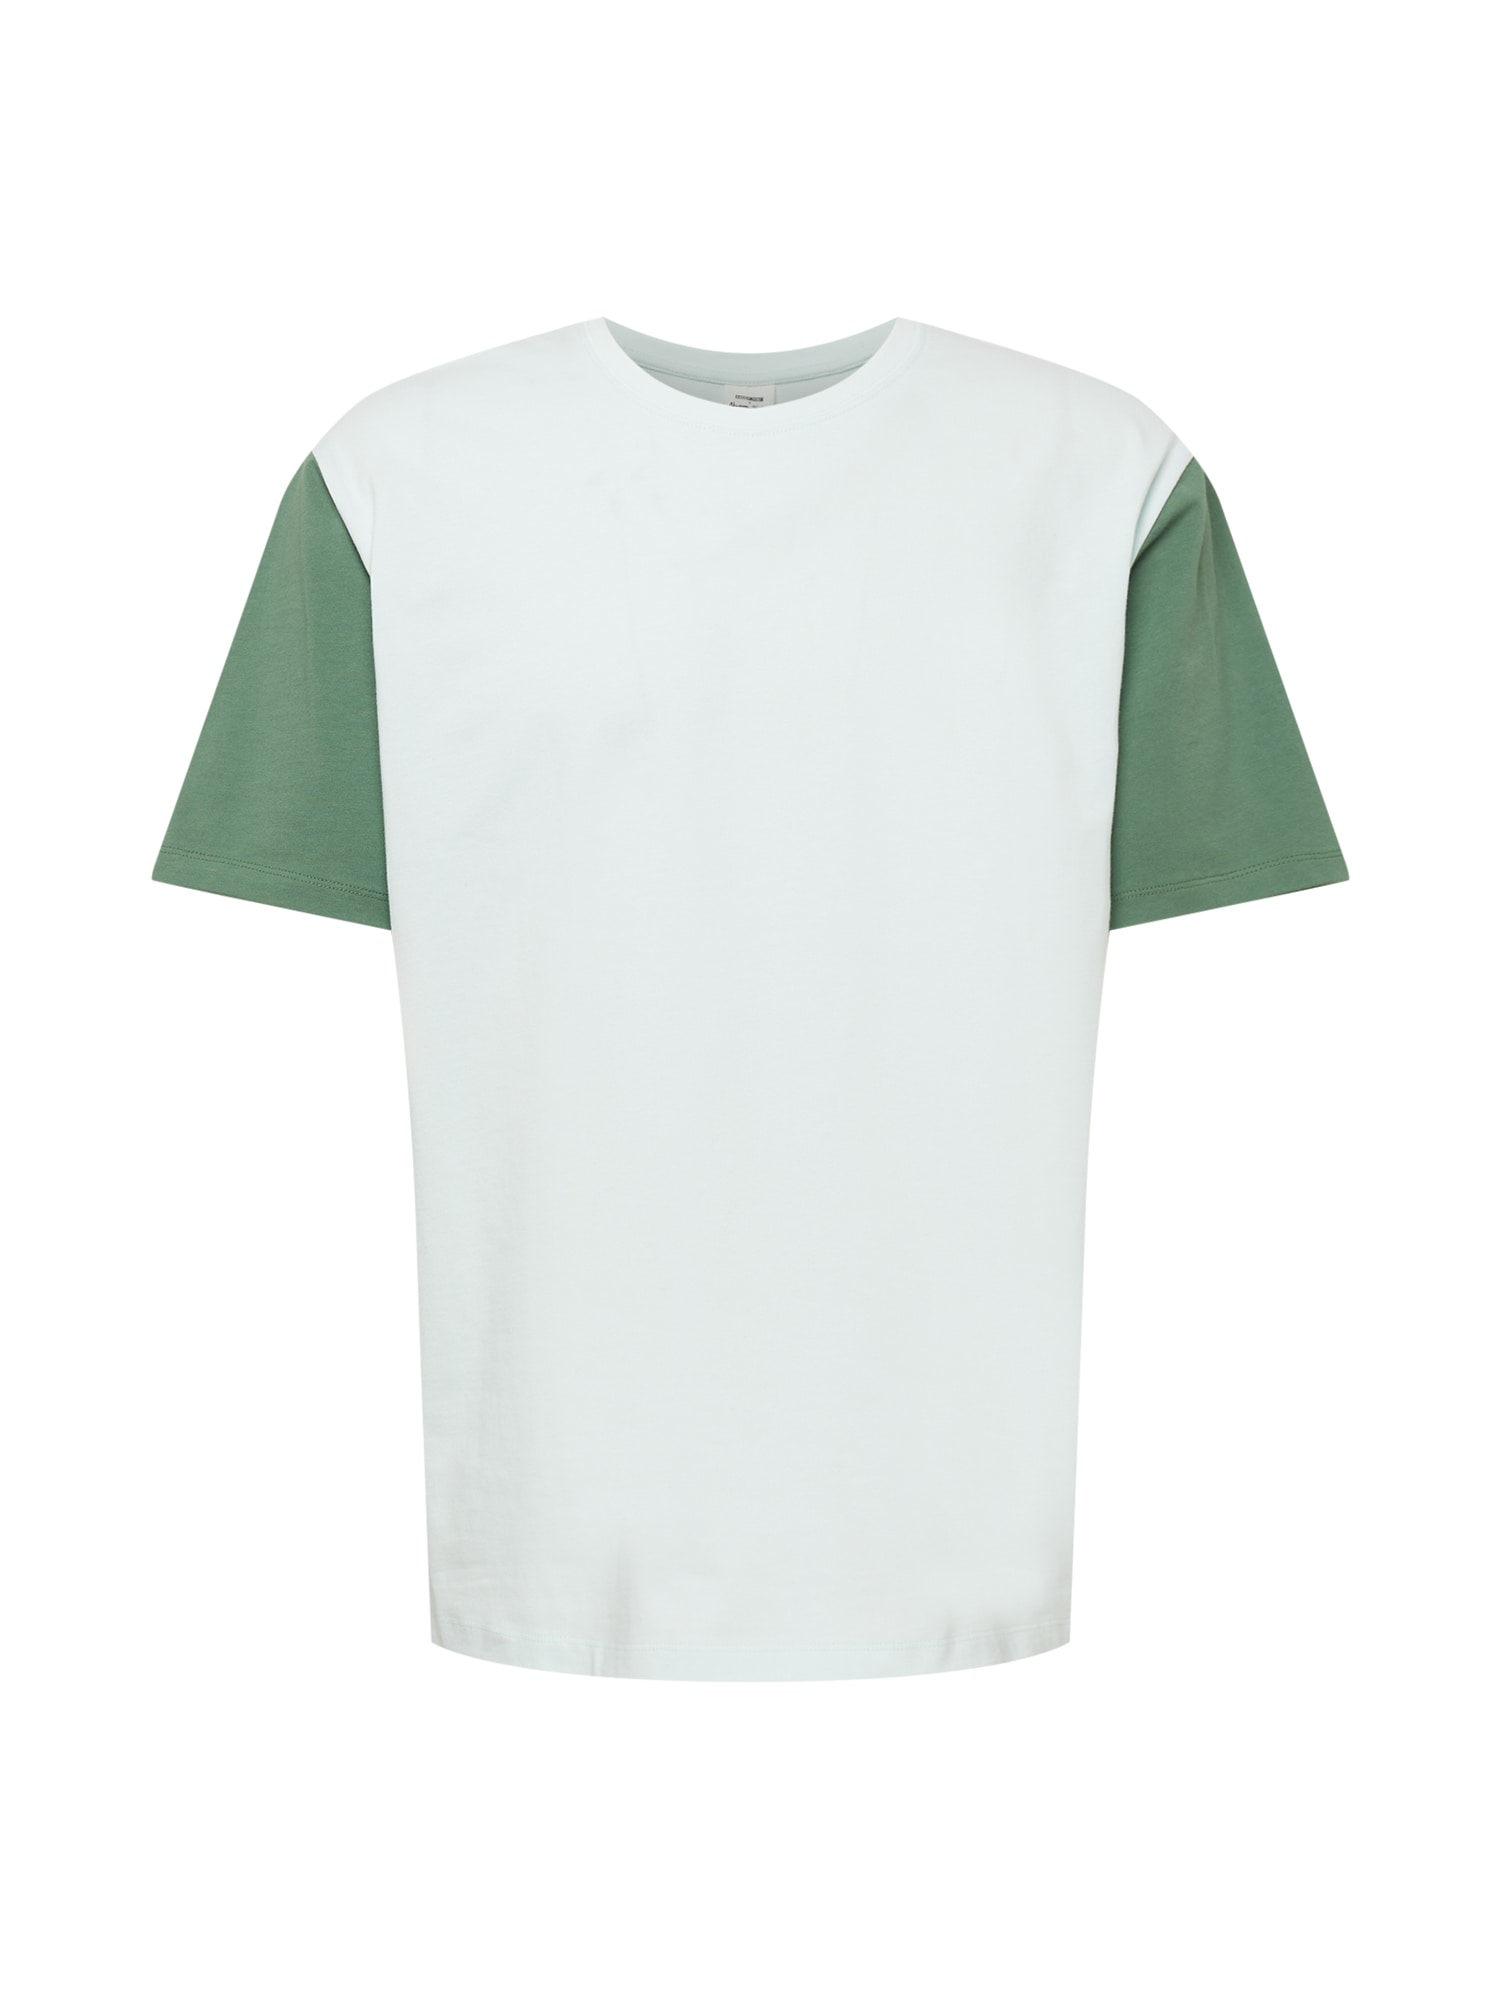 ABOUT YOU x Alvaro Soler Marškinėliai 'Ramon' mišrios spalvos / žalia / šviesiai žalia